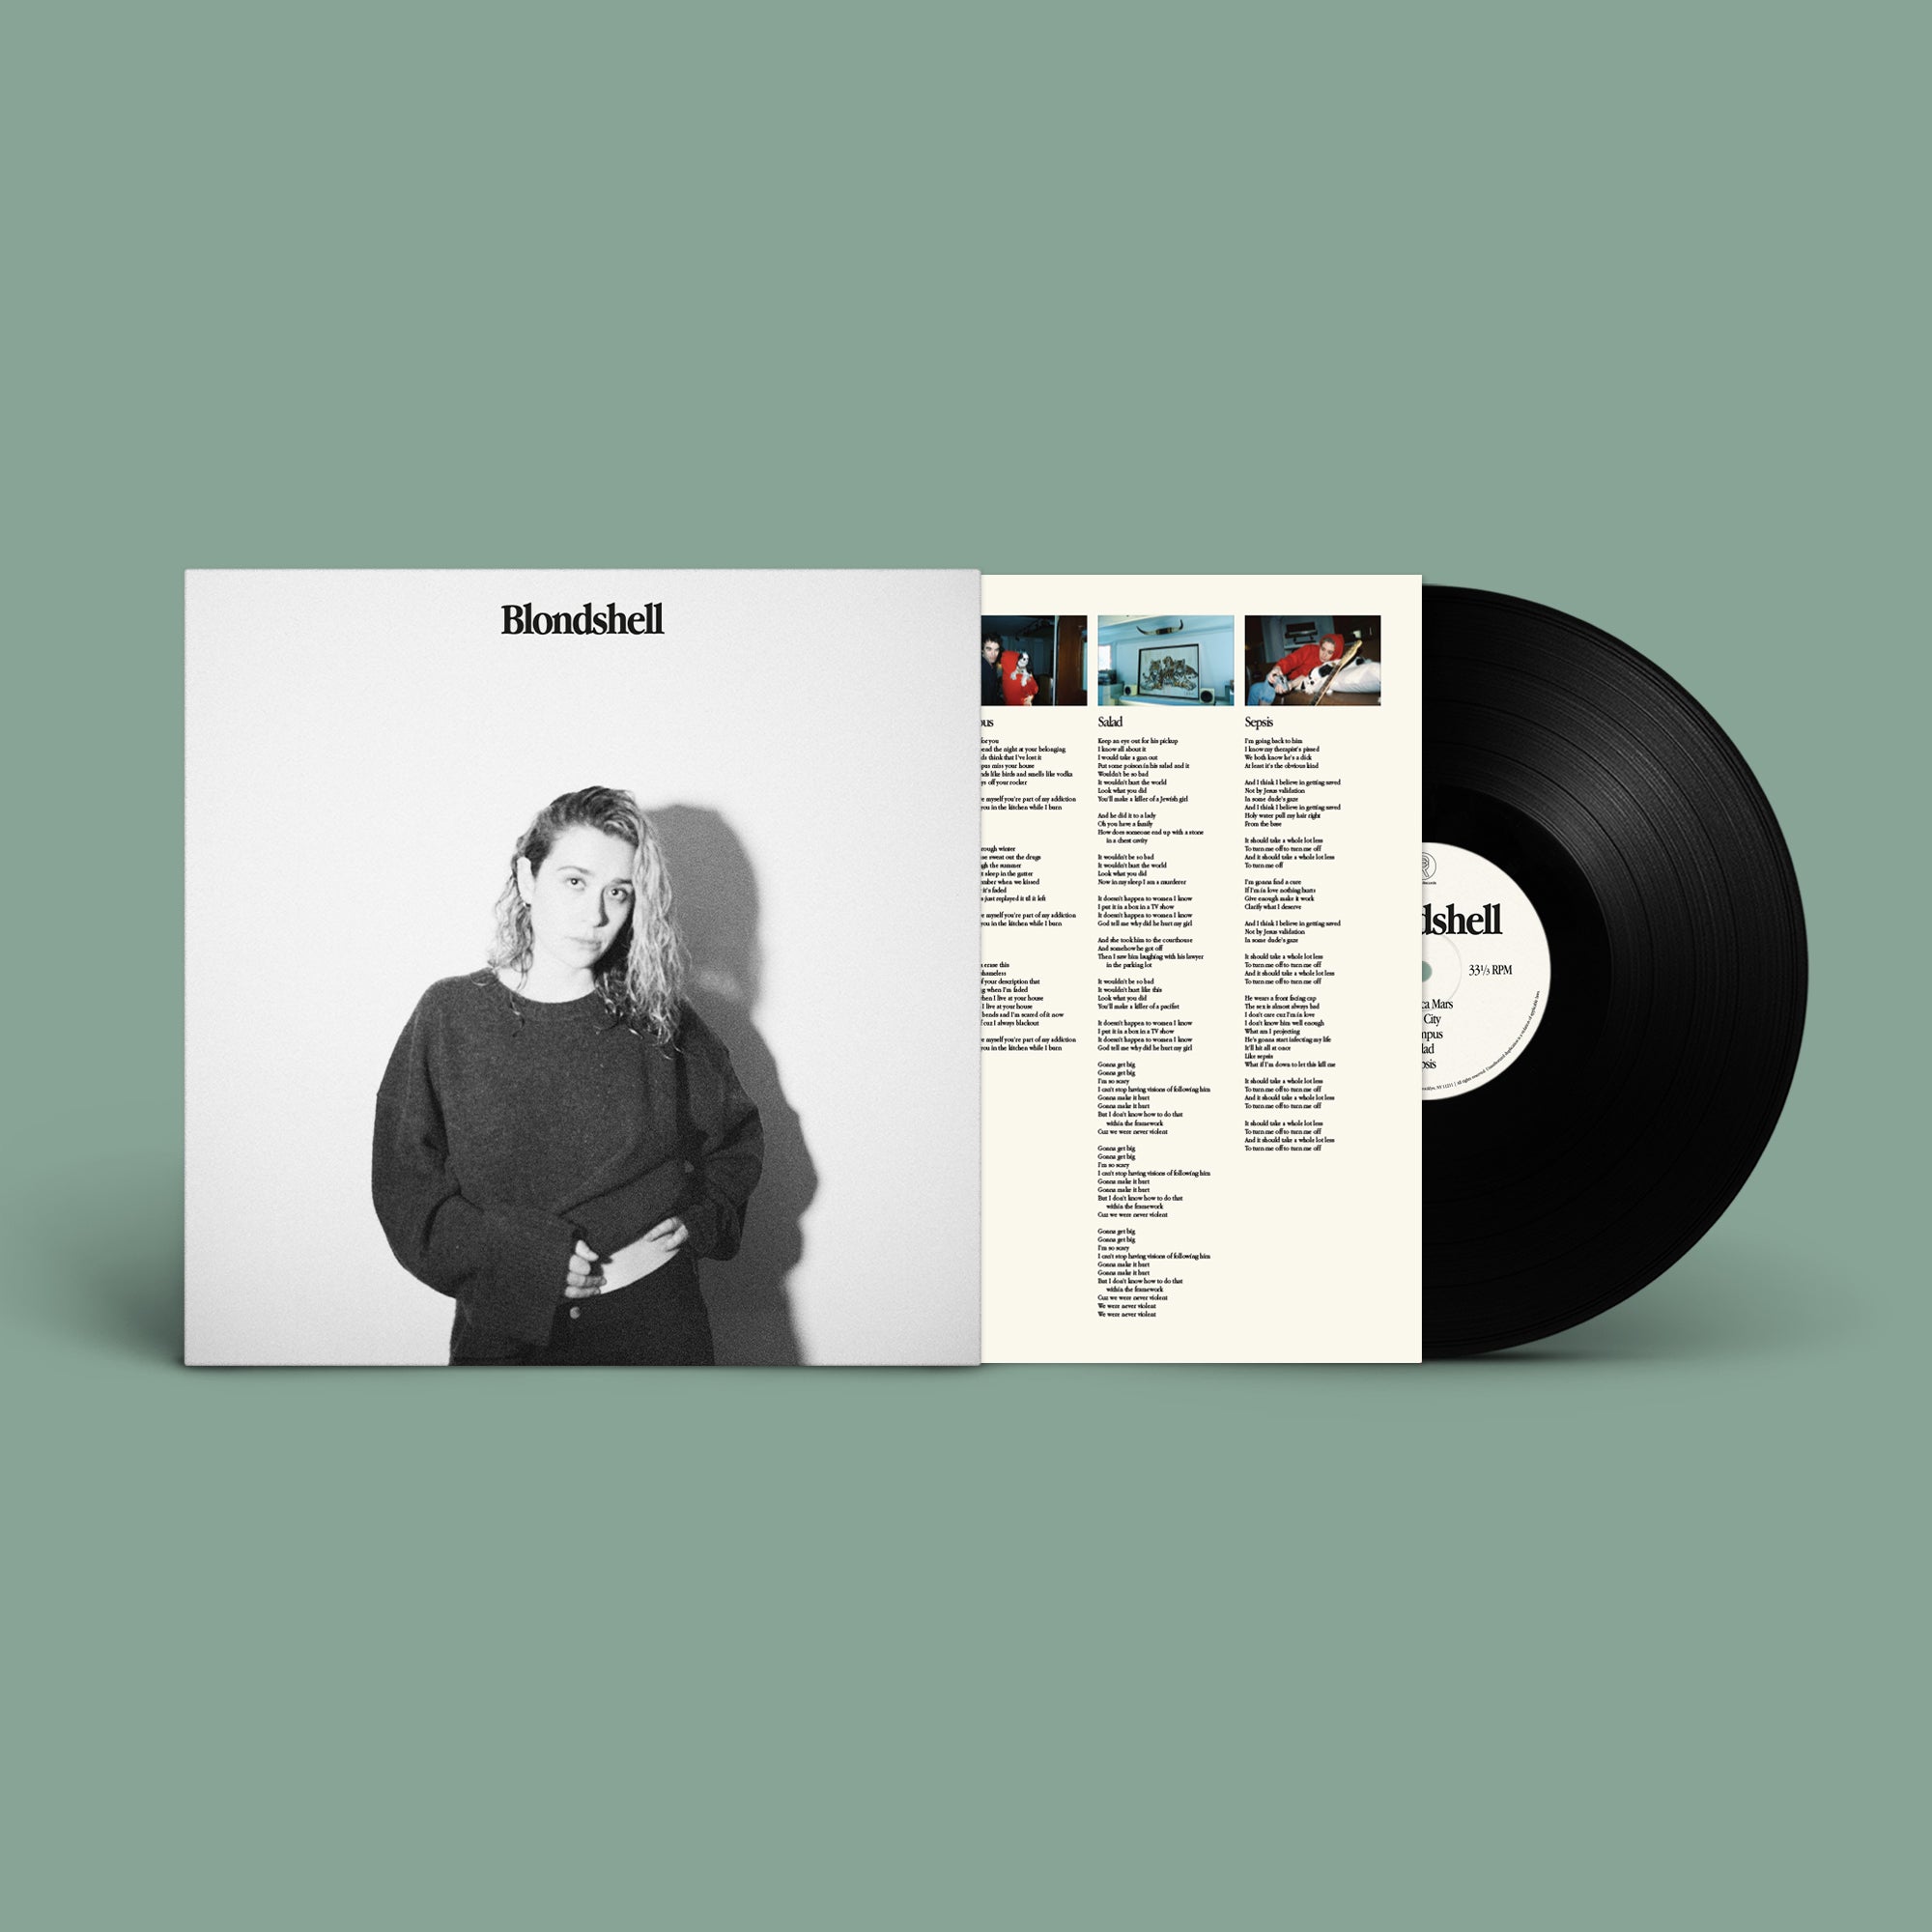 Blondshell - Blondshell: Vinyl LP